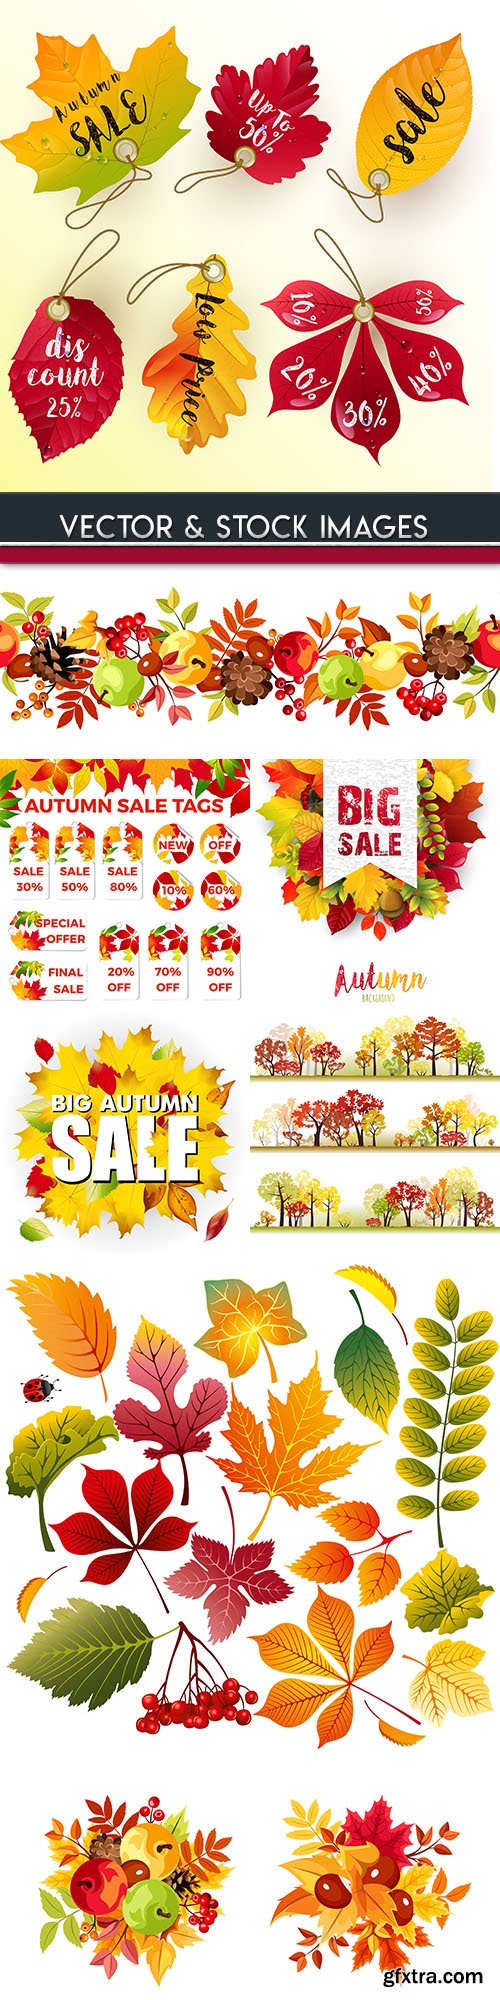 Autumn sales leaf fall bright leaves illustration